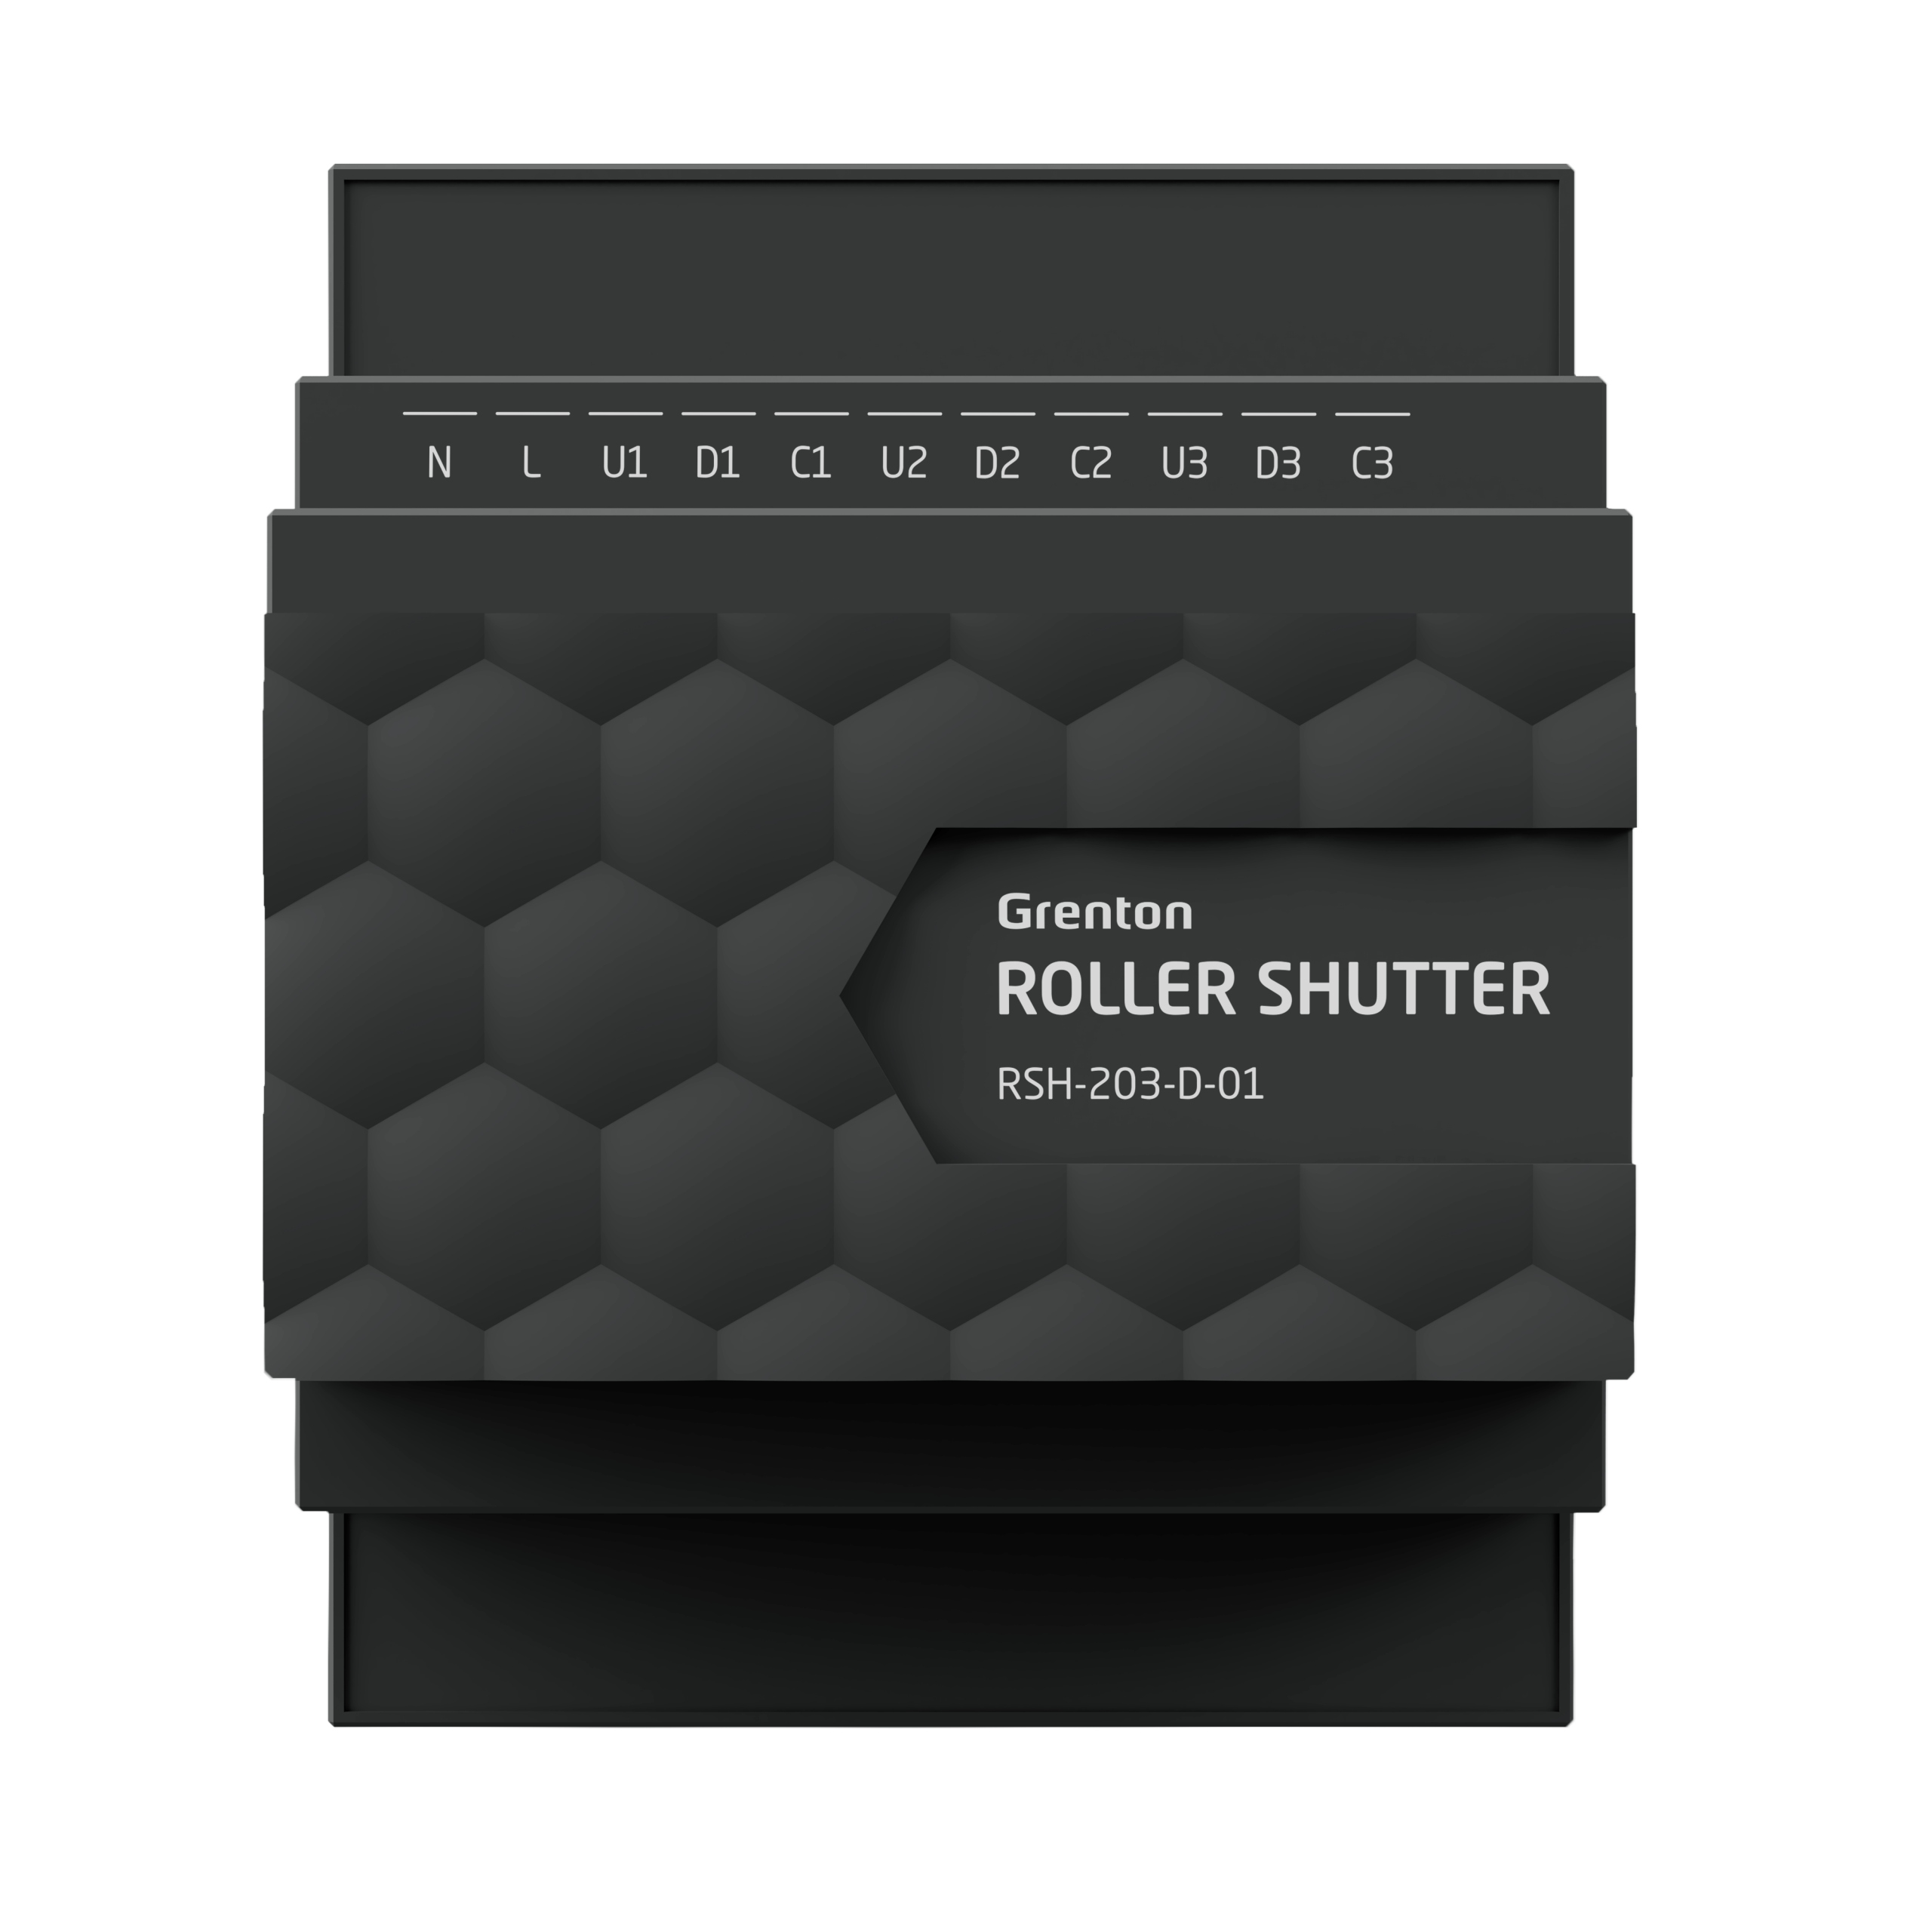 GRENTON ROLLER SHUTTER X3|Instalacja|Wsparcie Seria TF-Bus